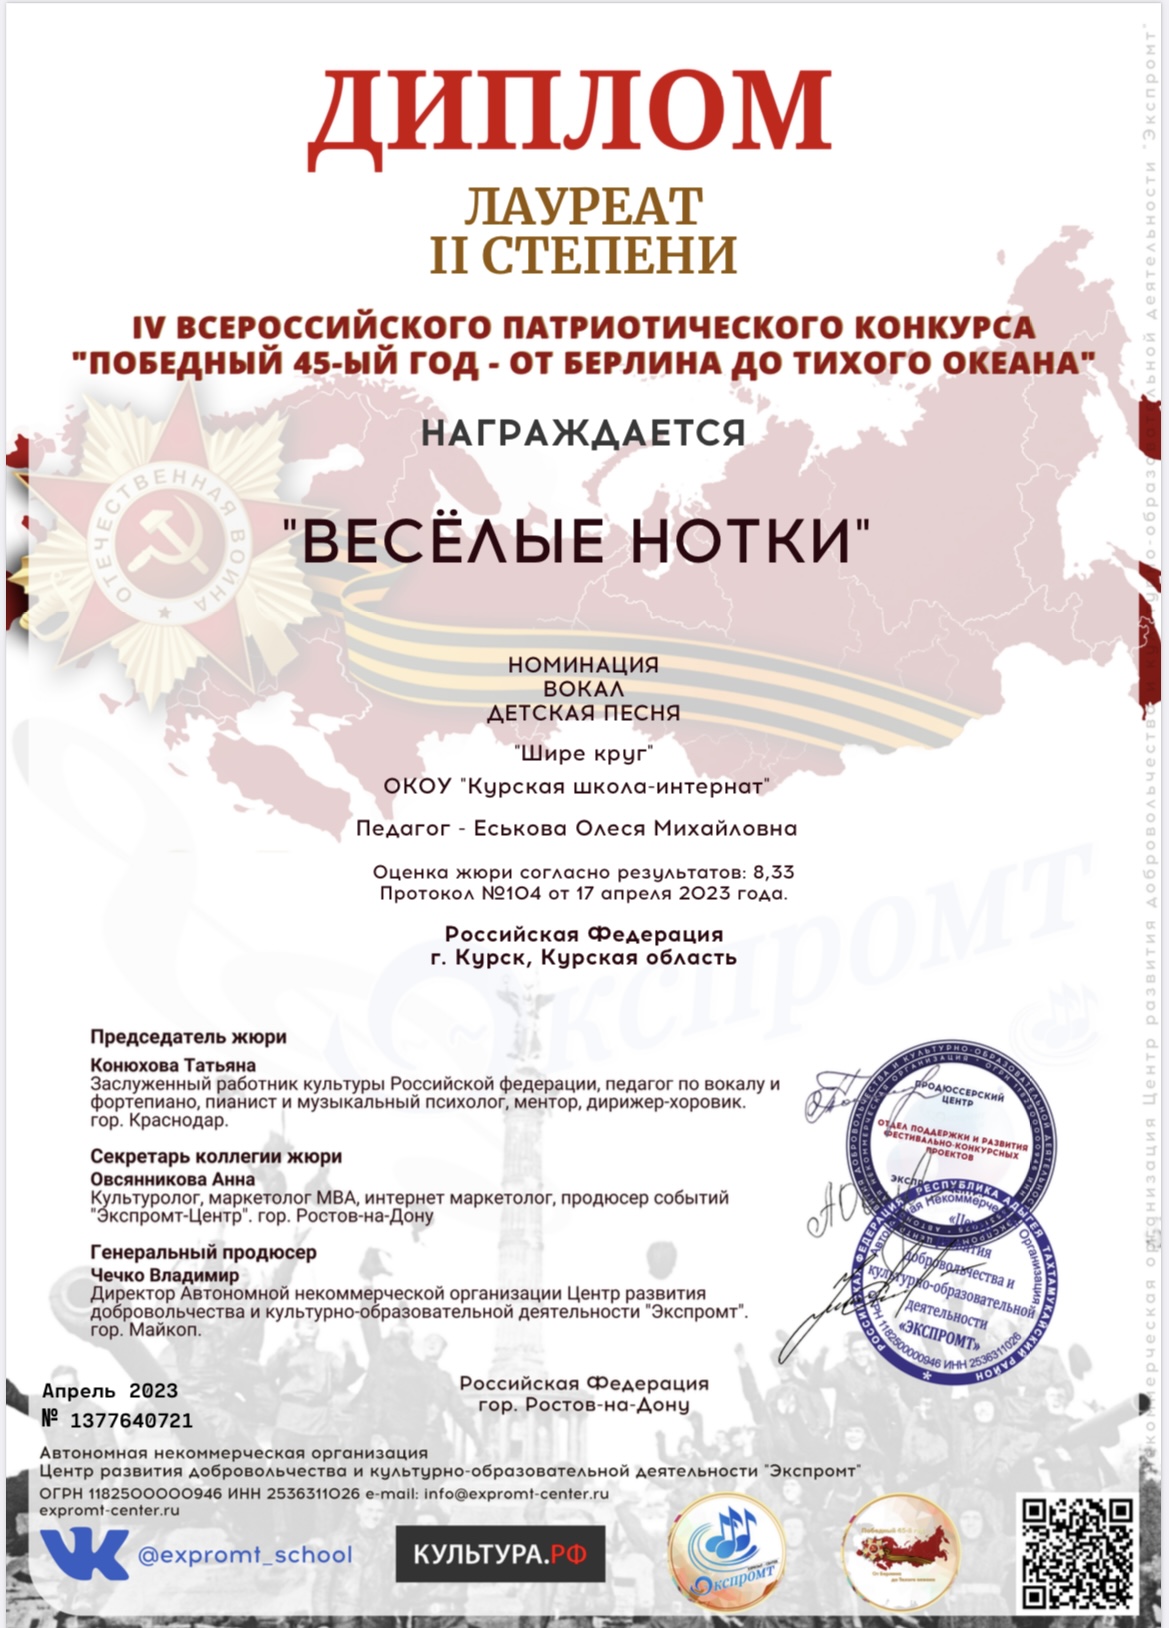 IV Всероссийский Патриотический конкурс «Победный 45-ый год – от Берлина до Тихого океана».